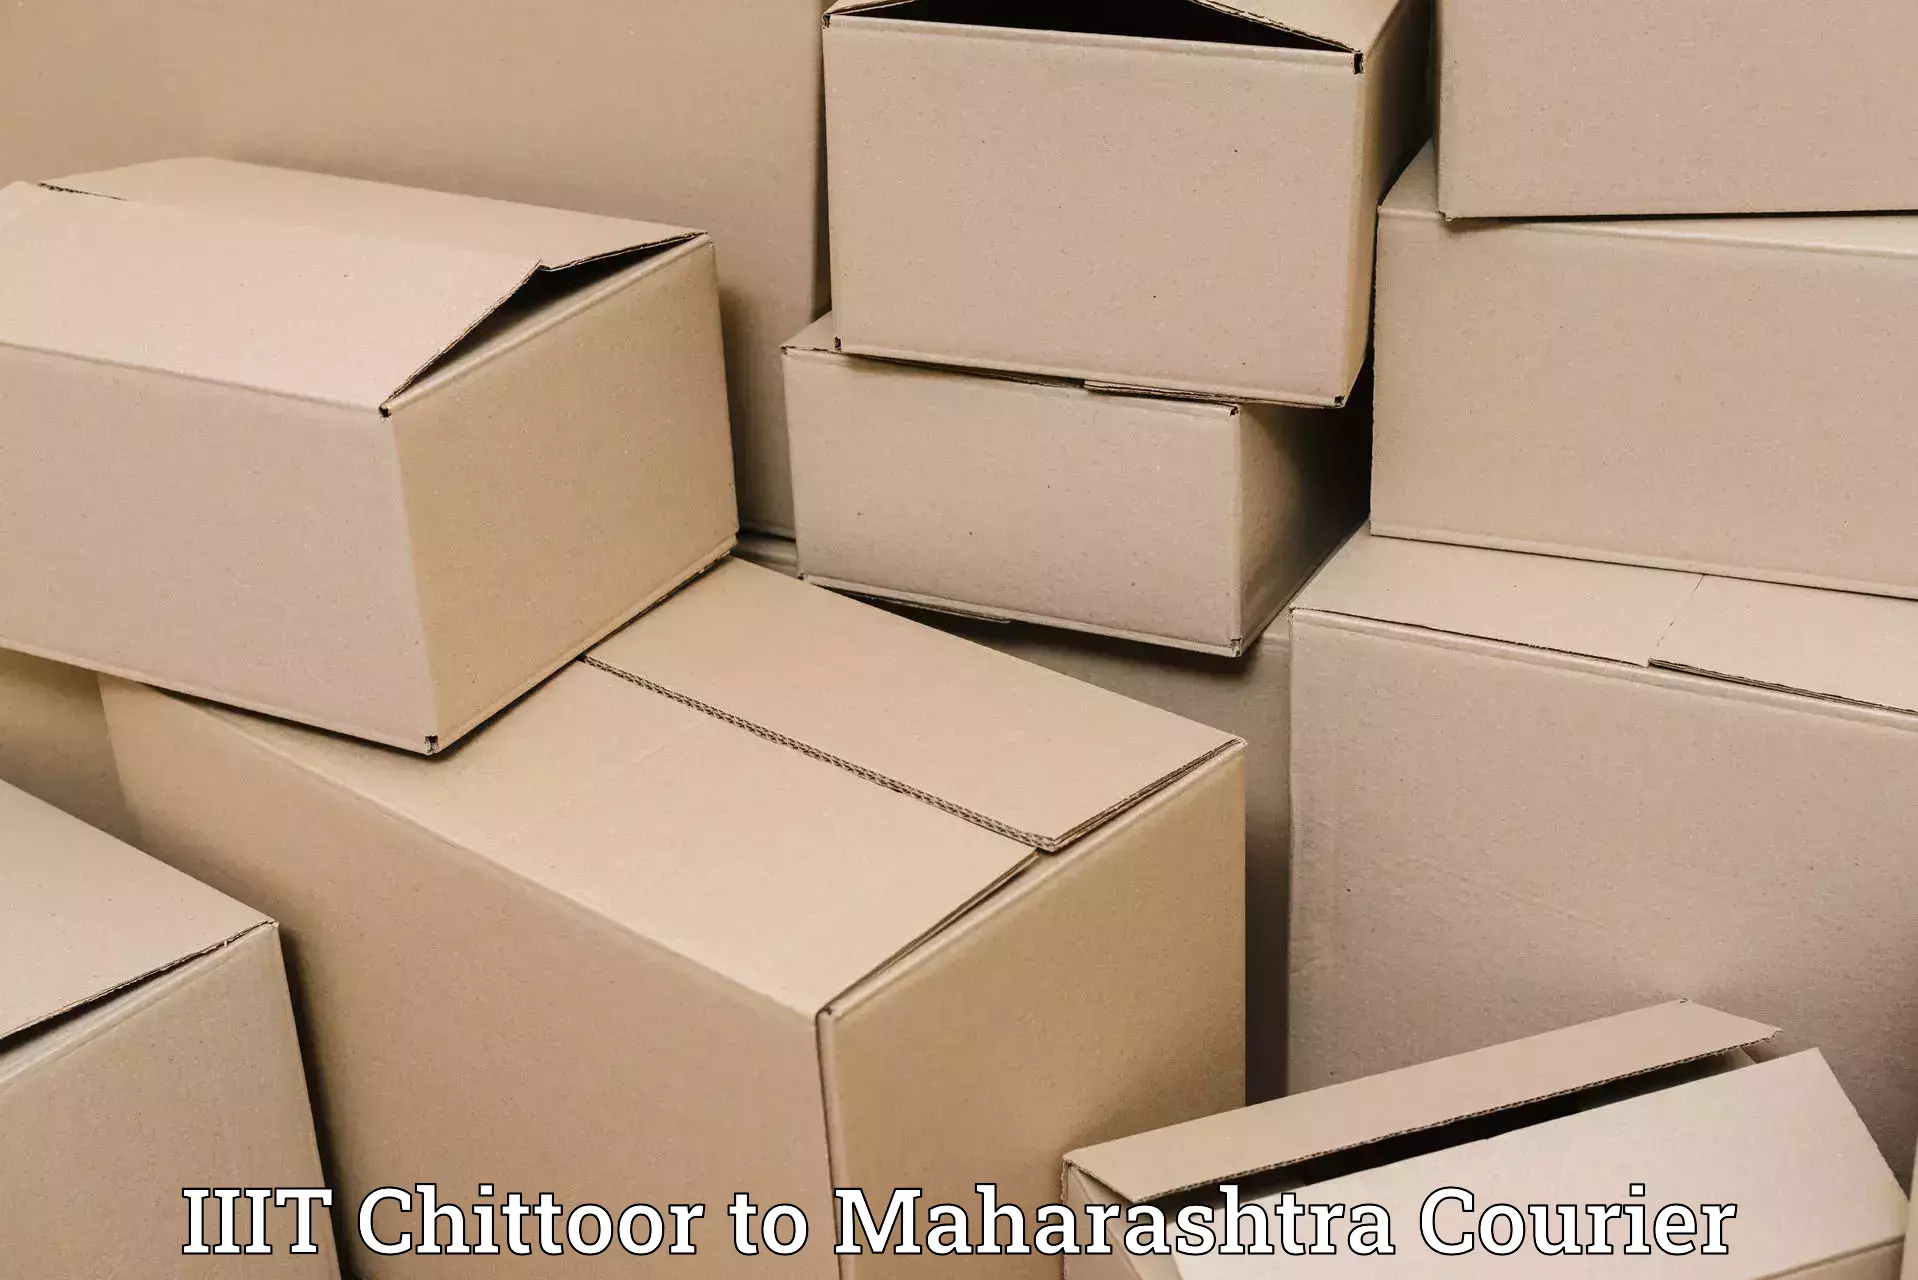 Door-to-door freight service IIIT Chittoor to Jamkhed